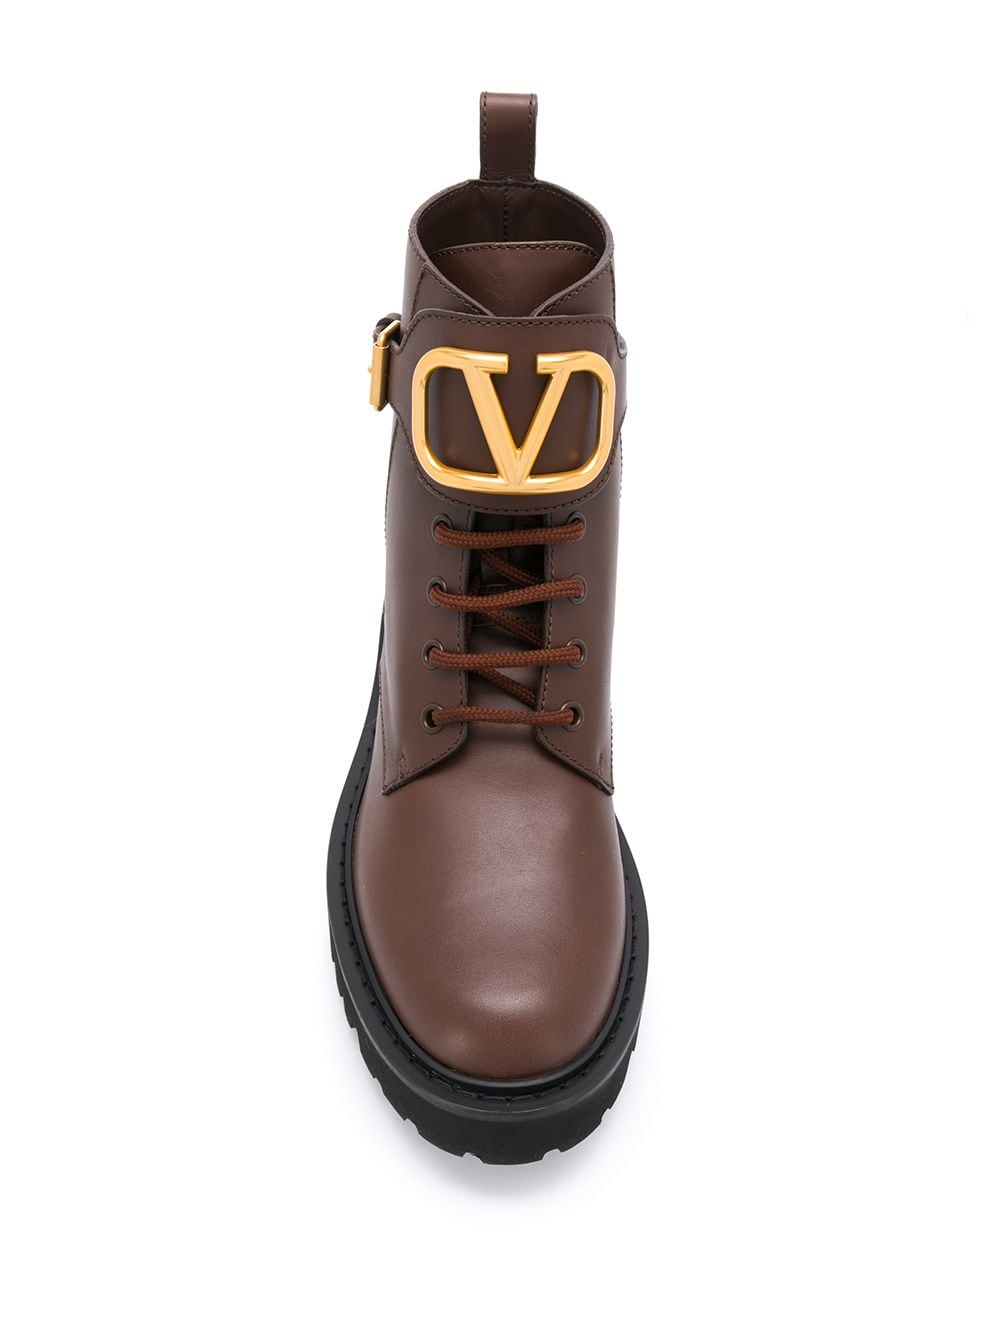 фото Valentino garavani ботинки в стиле милитари с логотипом vlogo